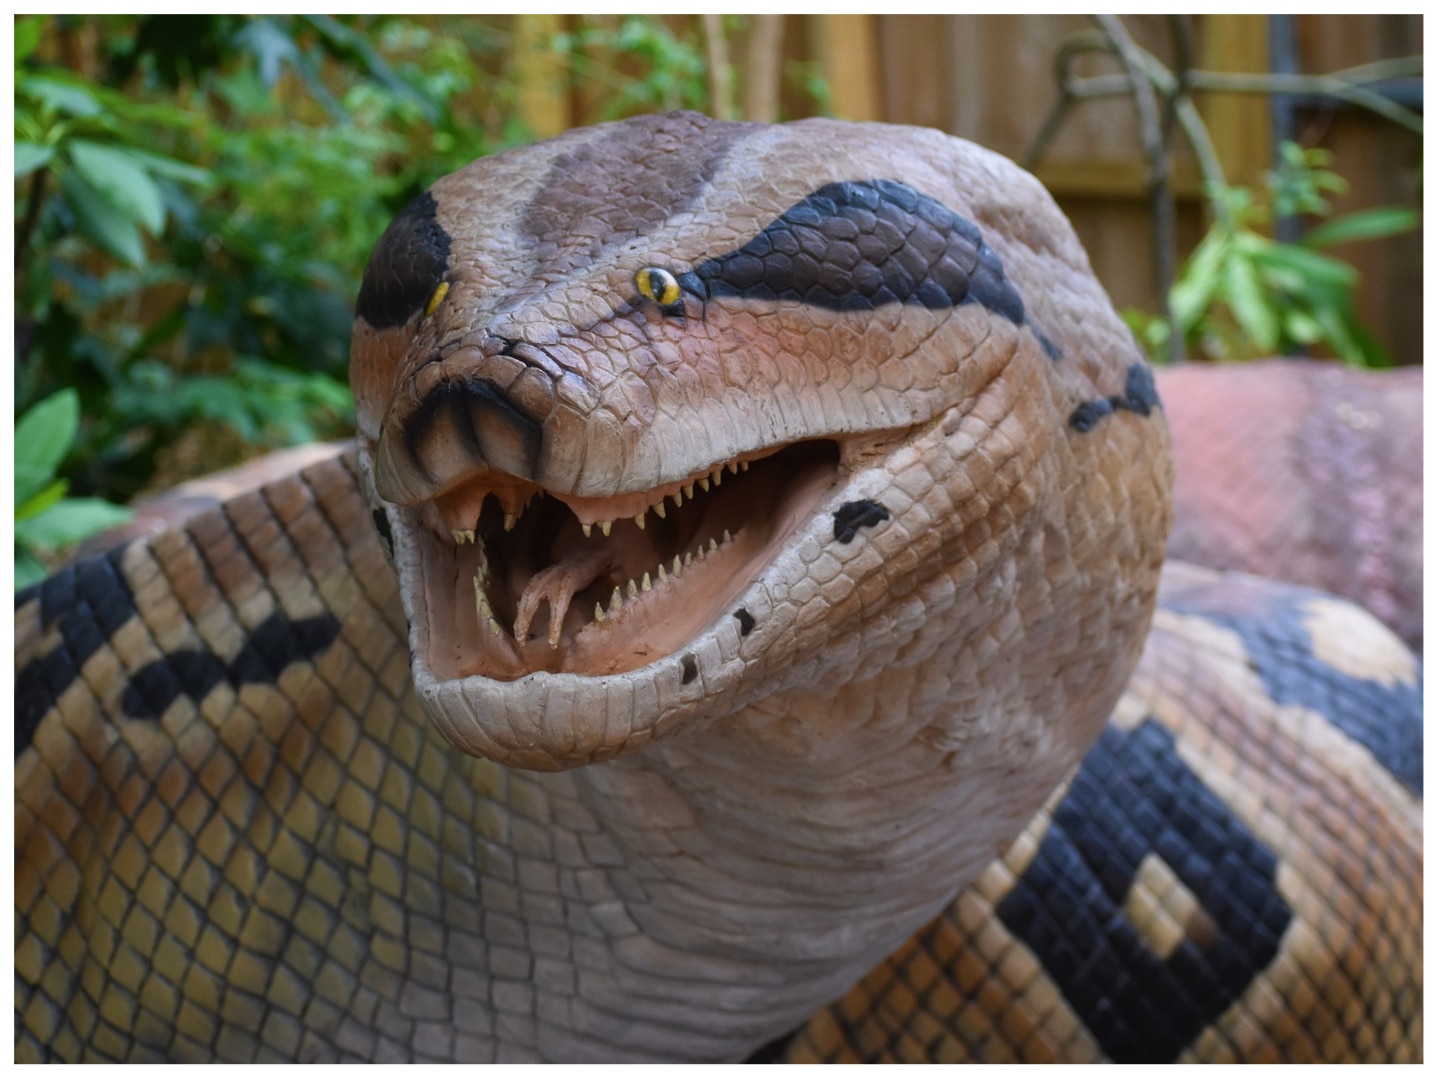 Titanoboa was the worlds biggest snake this used to weigh up to 1500 kg |  1500 किलो तक वजन के होते थे दुनिया के सबसे बड़े सांप! आज भी इस नदी में